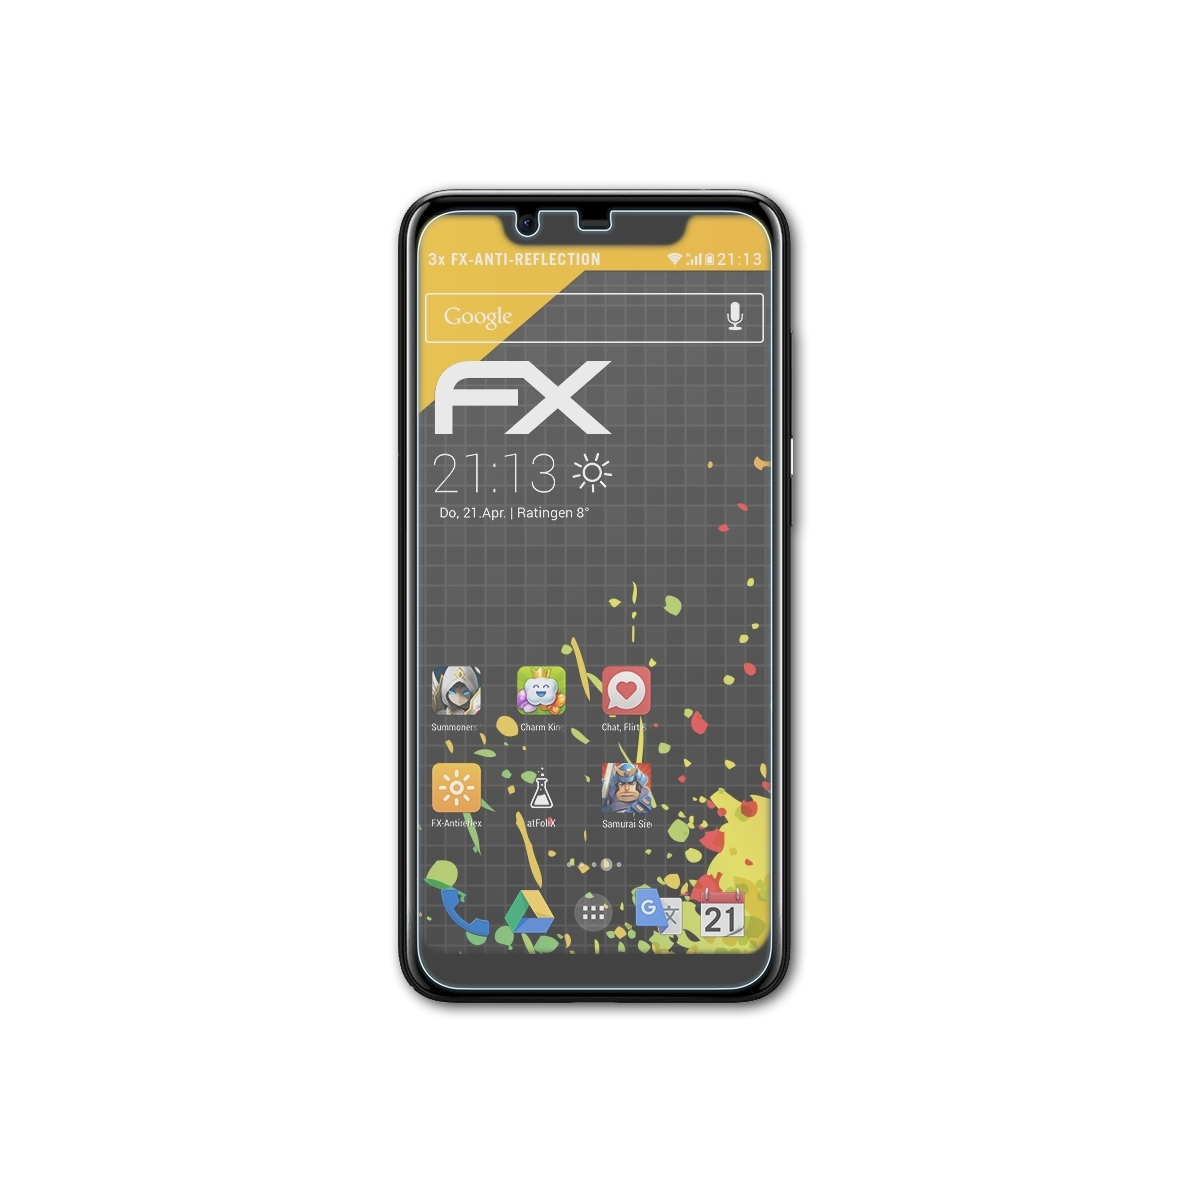 ATFOLIX 3x FX-Antireflex Nokia Displayschutz(für Plus) 5.1